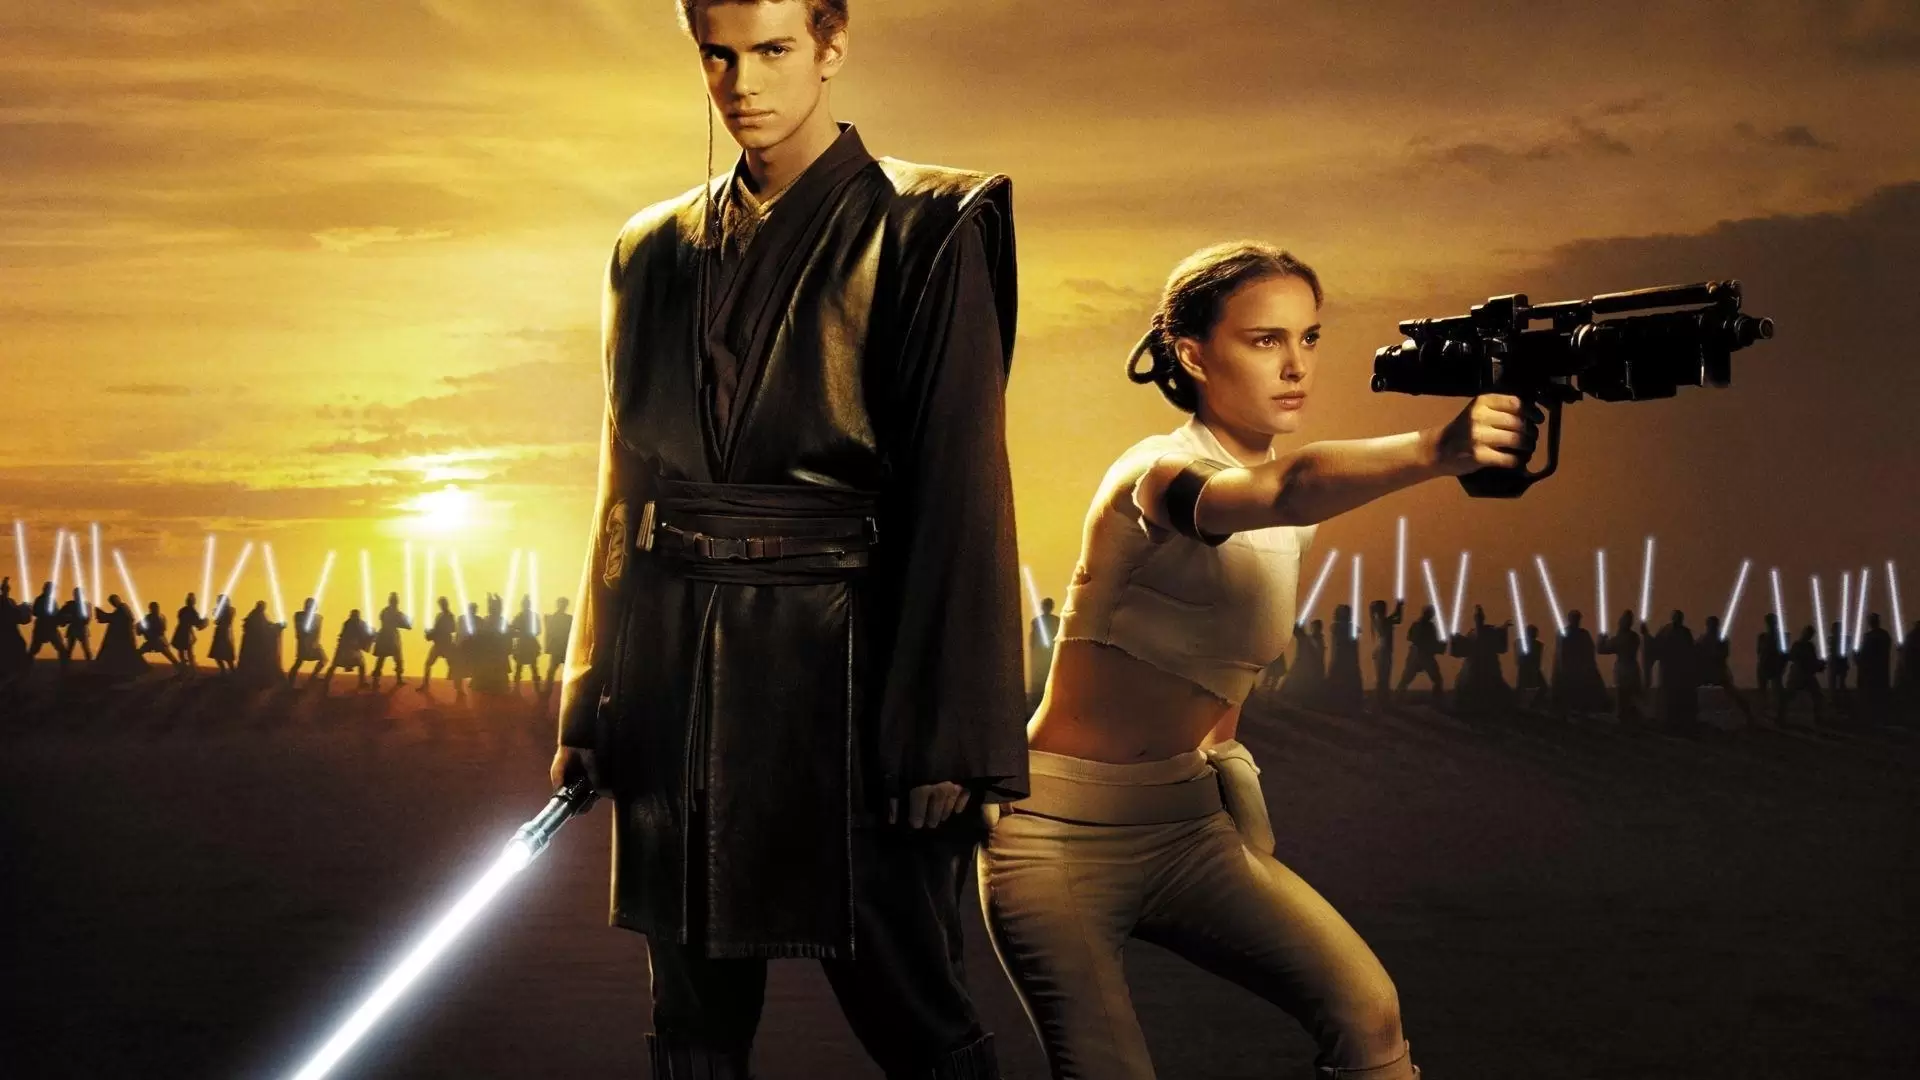 دانلود فیلم Star Wars: Episode II – Attack of the Clones 2002 (جنگ ستارگان ۲: حمله کلون ها) با زیرنویس فارسی و تماشای آنلاین